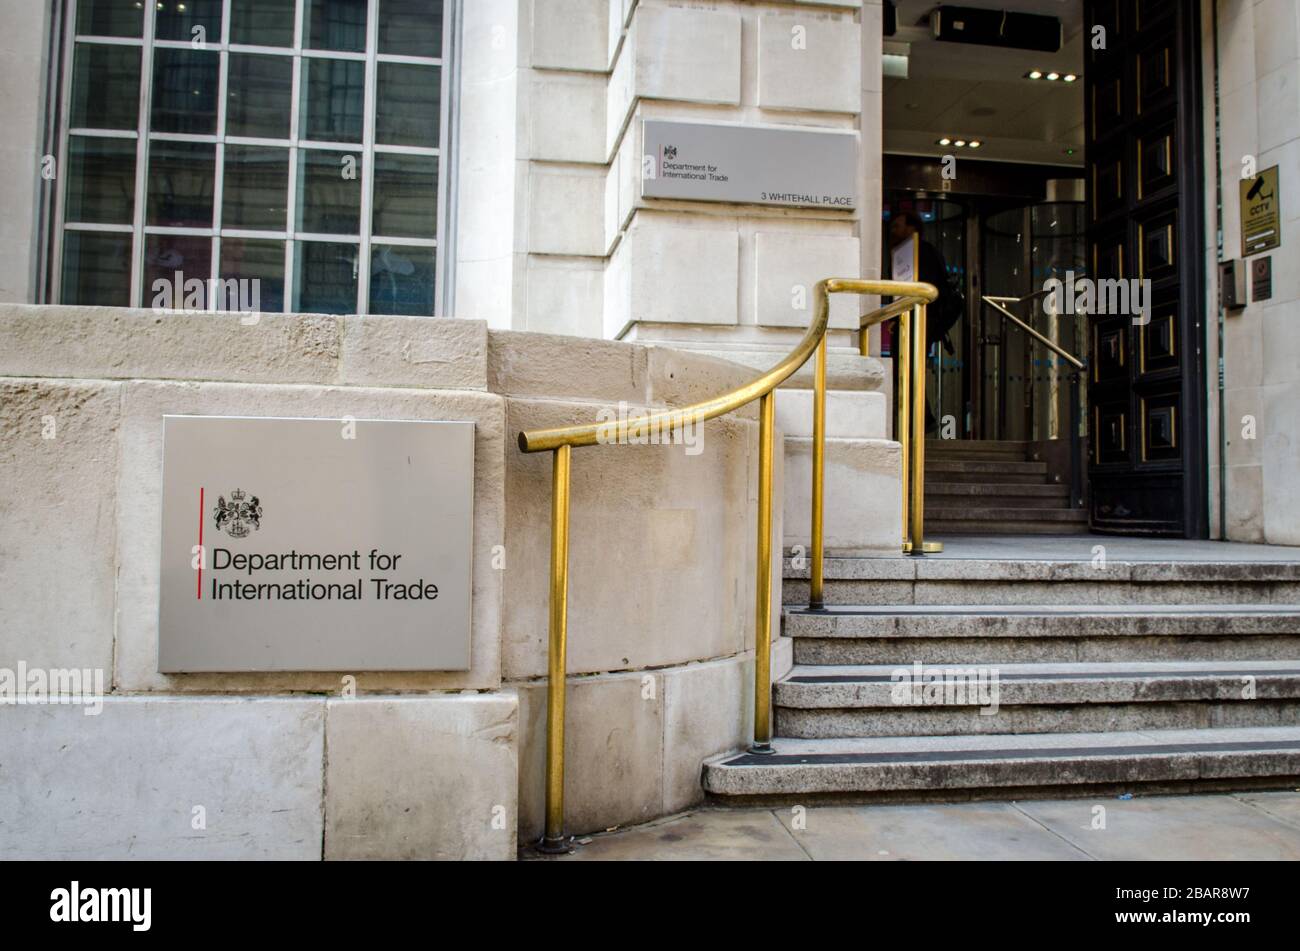 London - Abteilung Für Internationalen Handel. Britische Regierungsbehörde in Westminster, London. Stockfoto